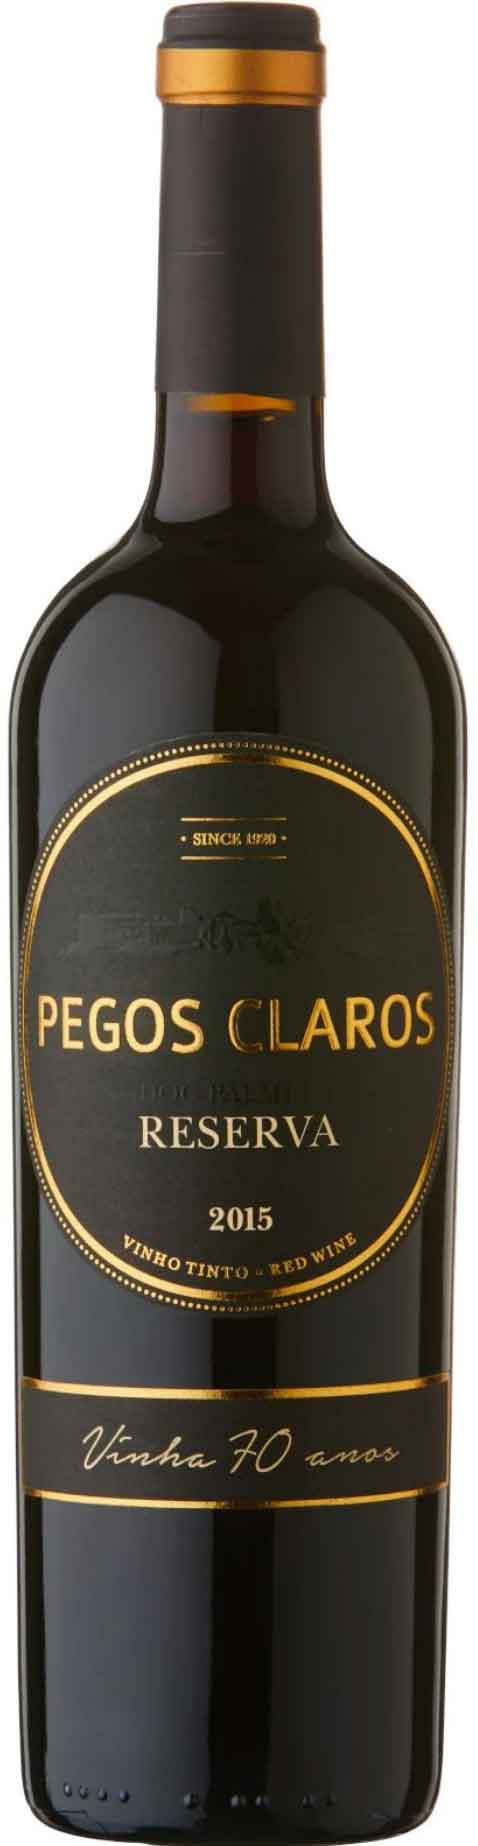 Portugal Red Wine, Pegos Claros - Doc Palmela Reserva 2015 Castelão